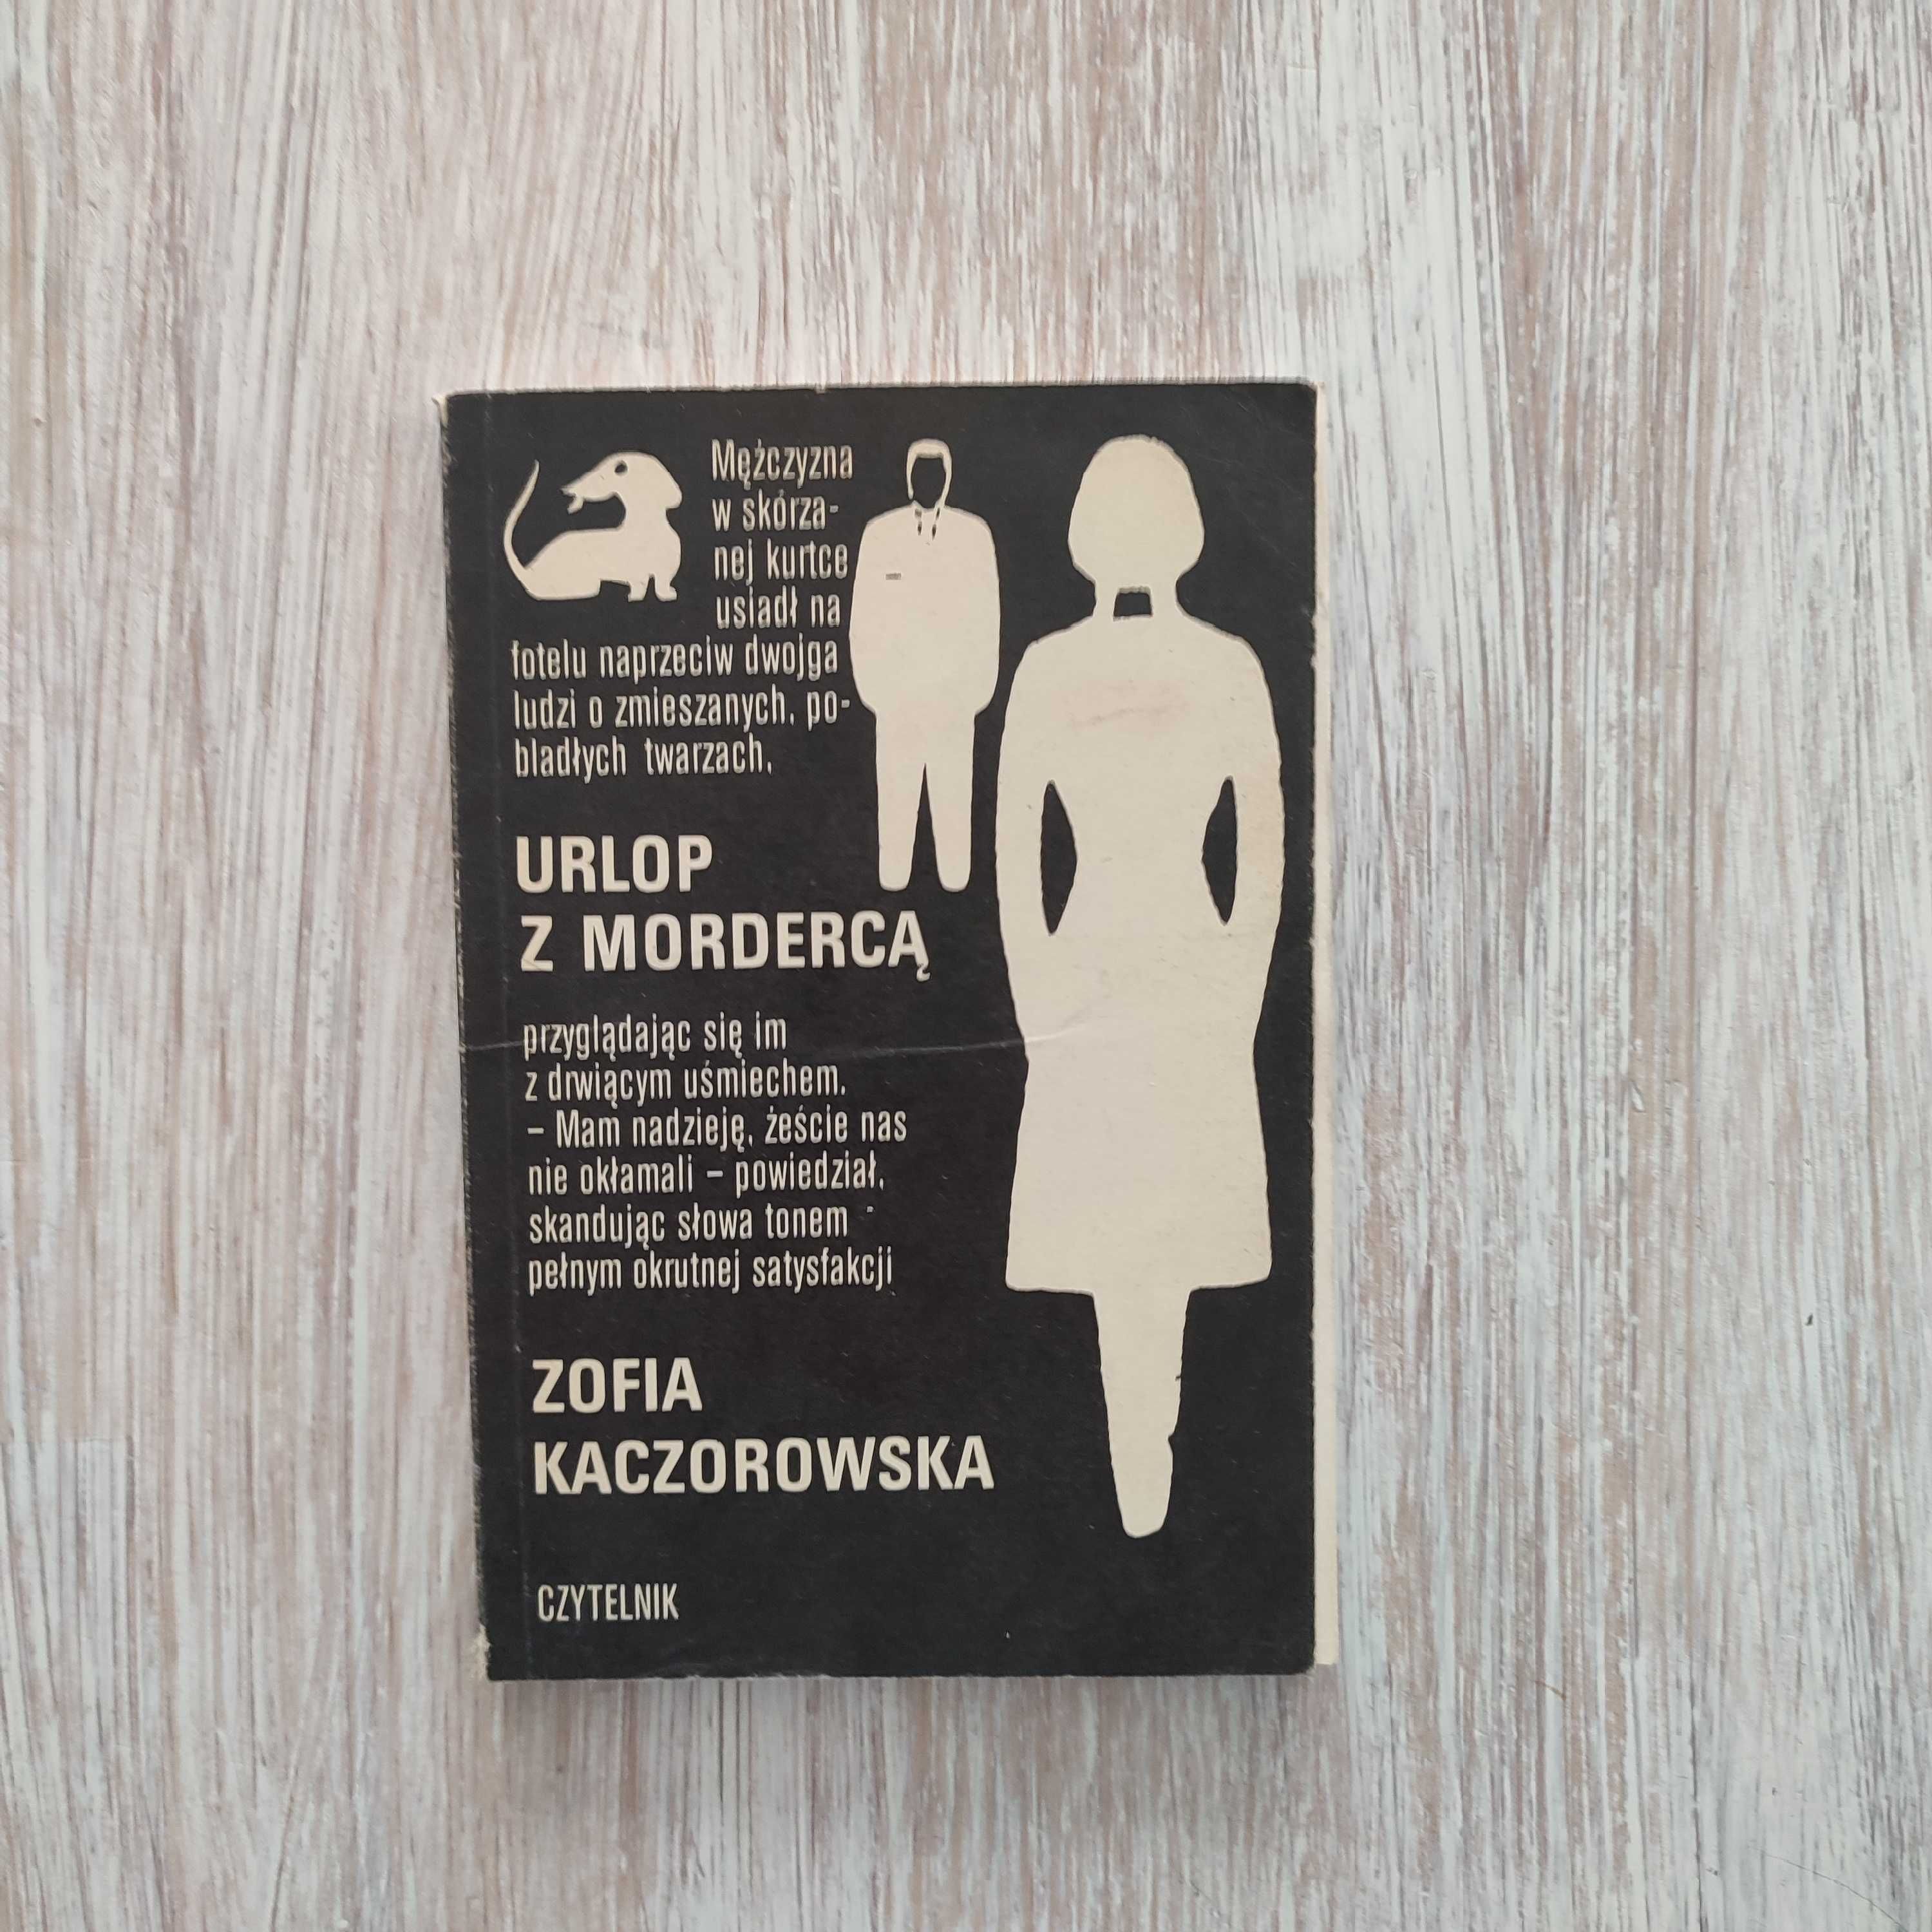 Urlop z mordercą - Zofia Kaczorowska